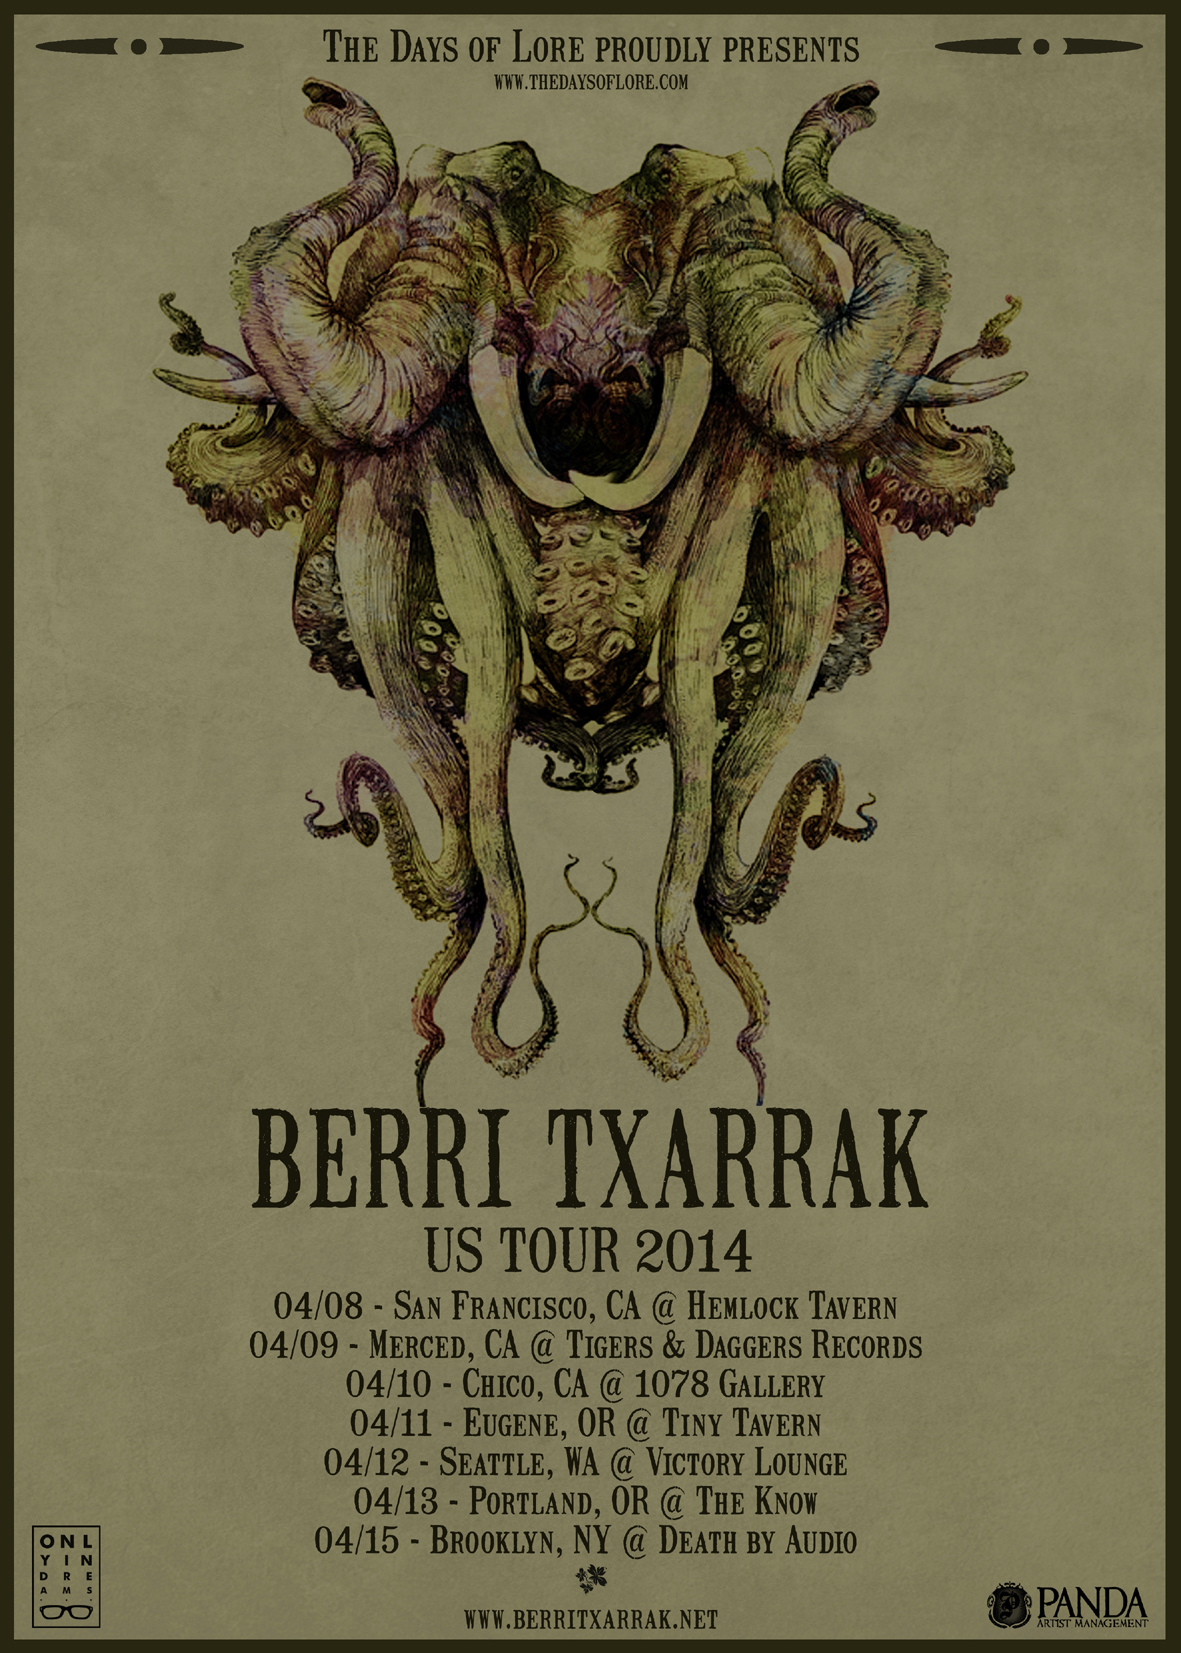 BERRI TXARRAK USA TOUR 2014